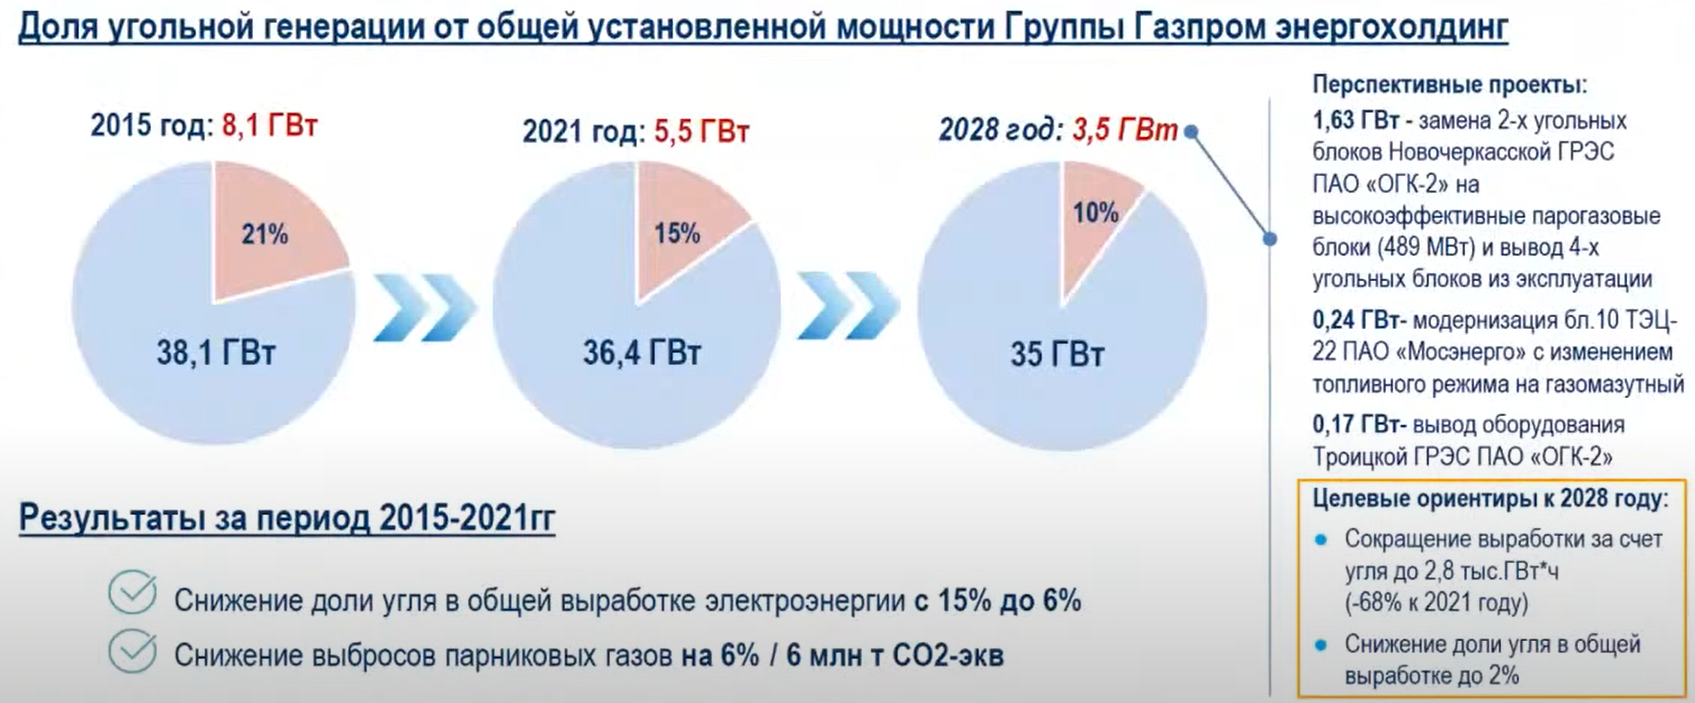 Доля угольной генерации Газпром энергохолдинг